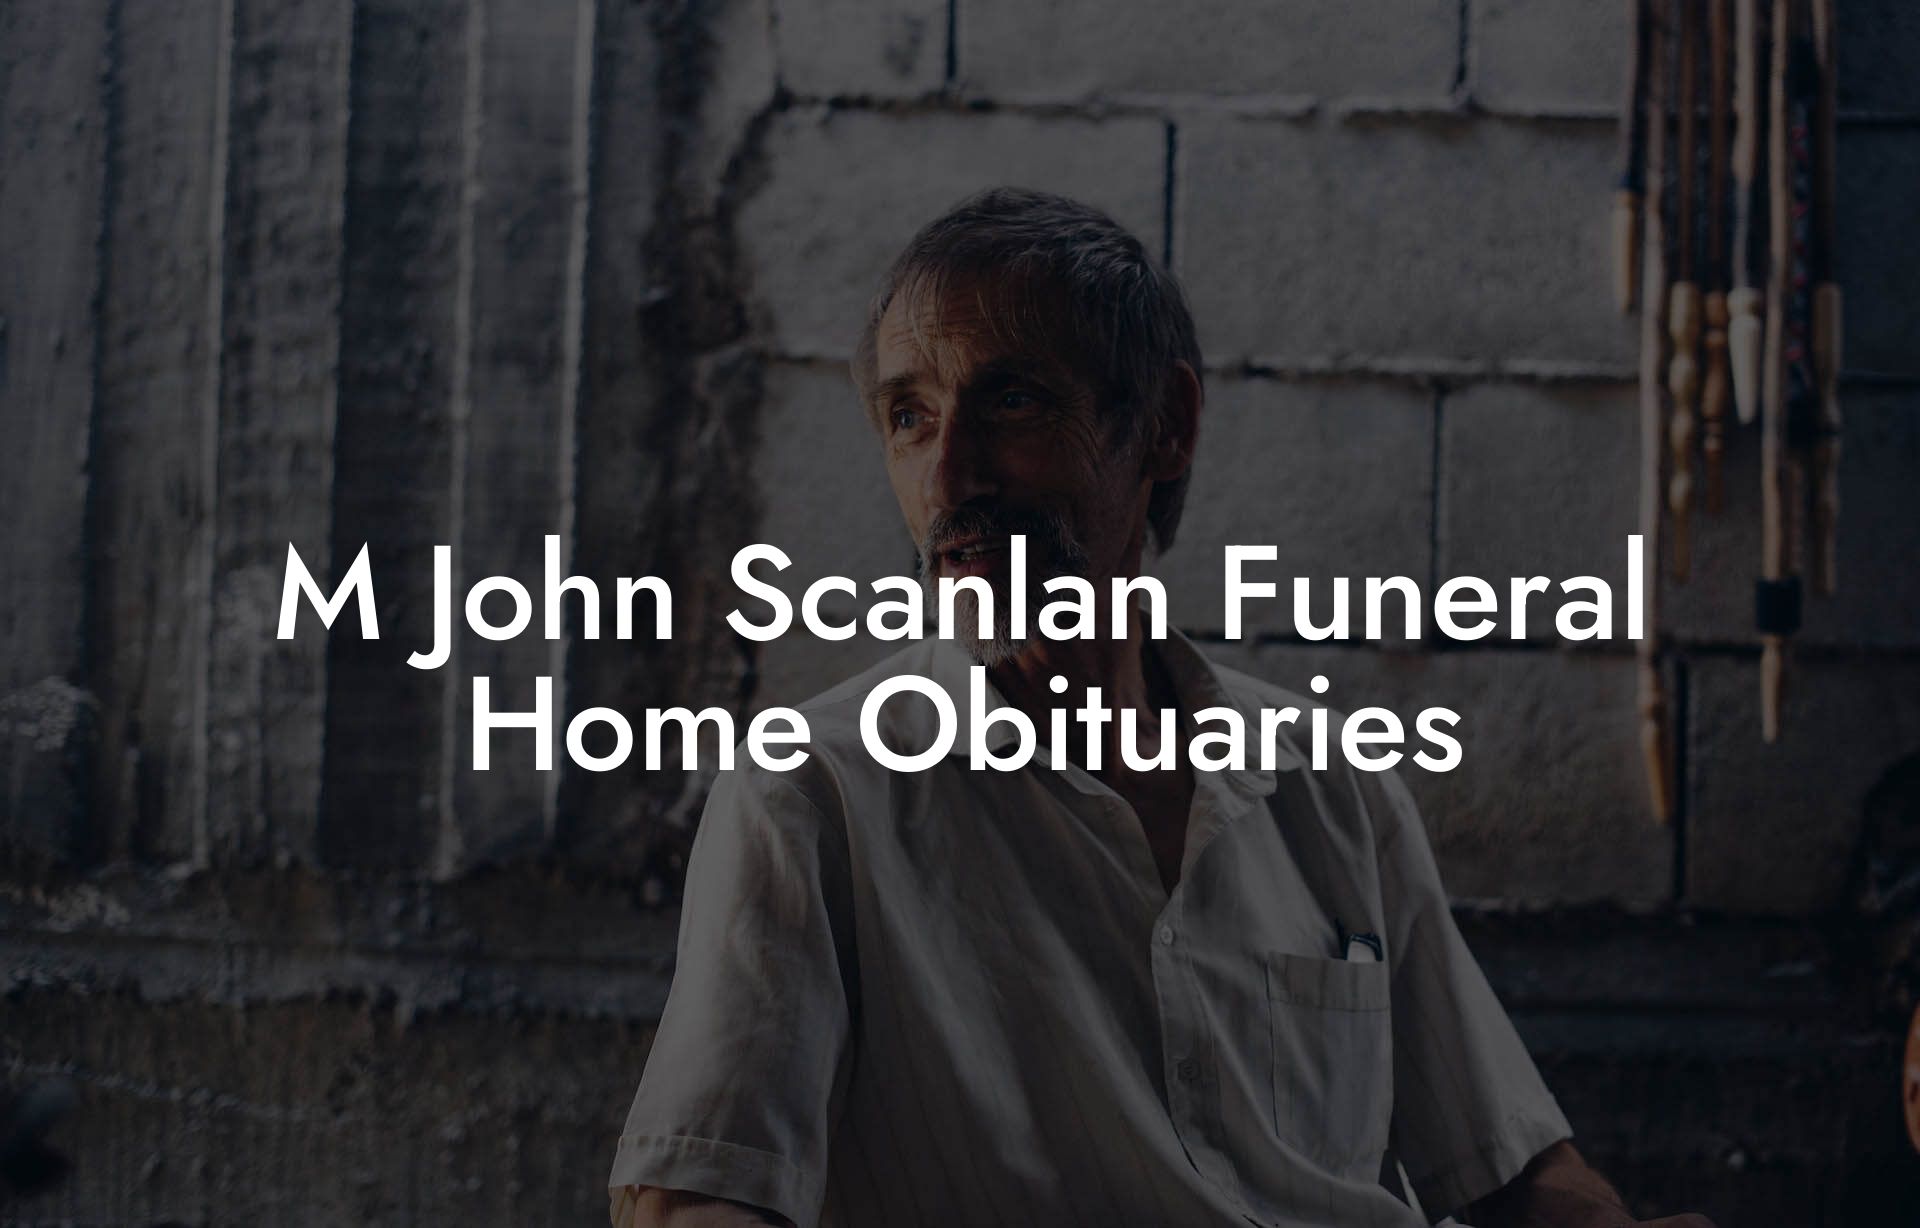 M. John Scanlan Funeral Home Obituaries